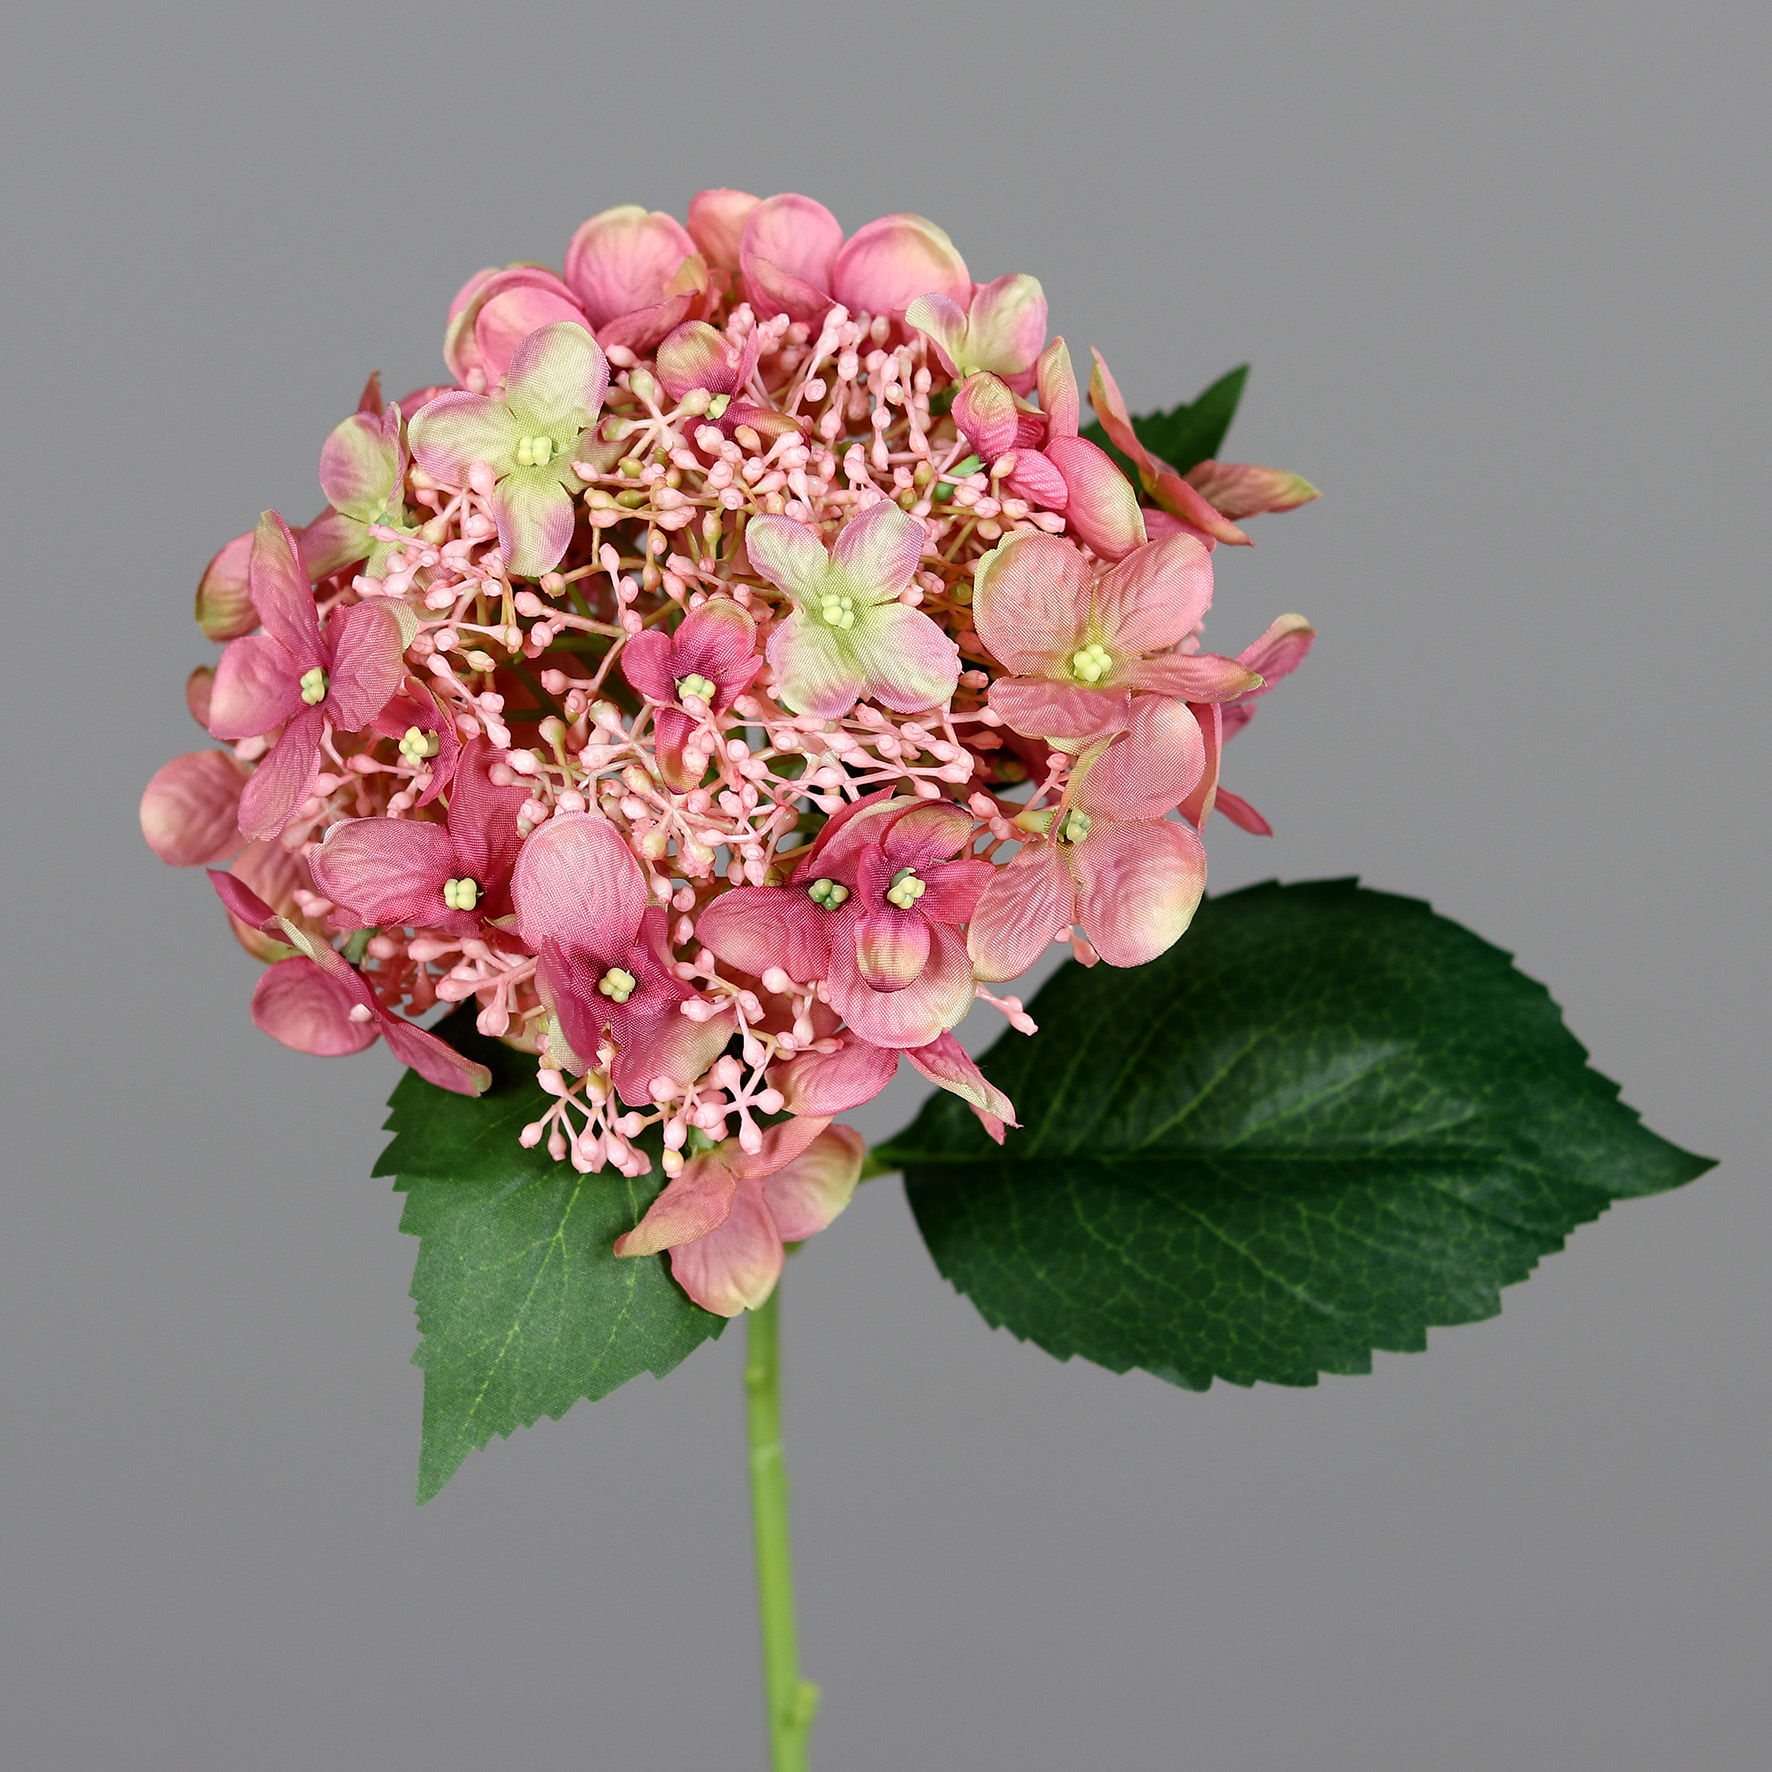 Hortensie Kunstlbumen 52cm Hydrangea Blumen rosa DP Hortensien künstliche Sommer